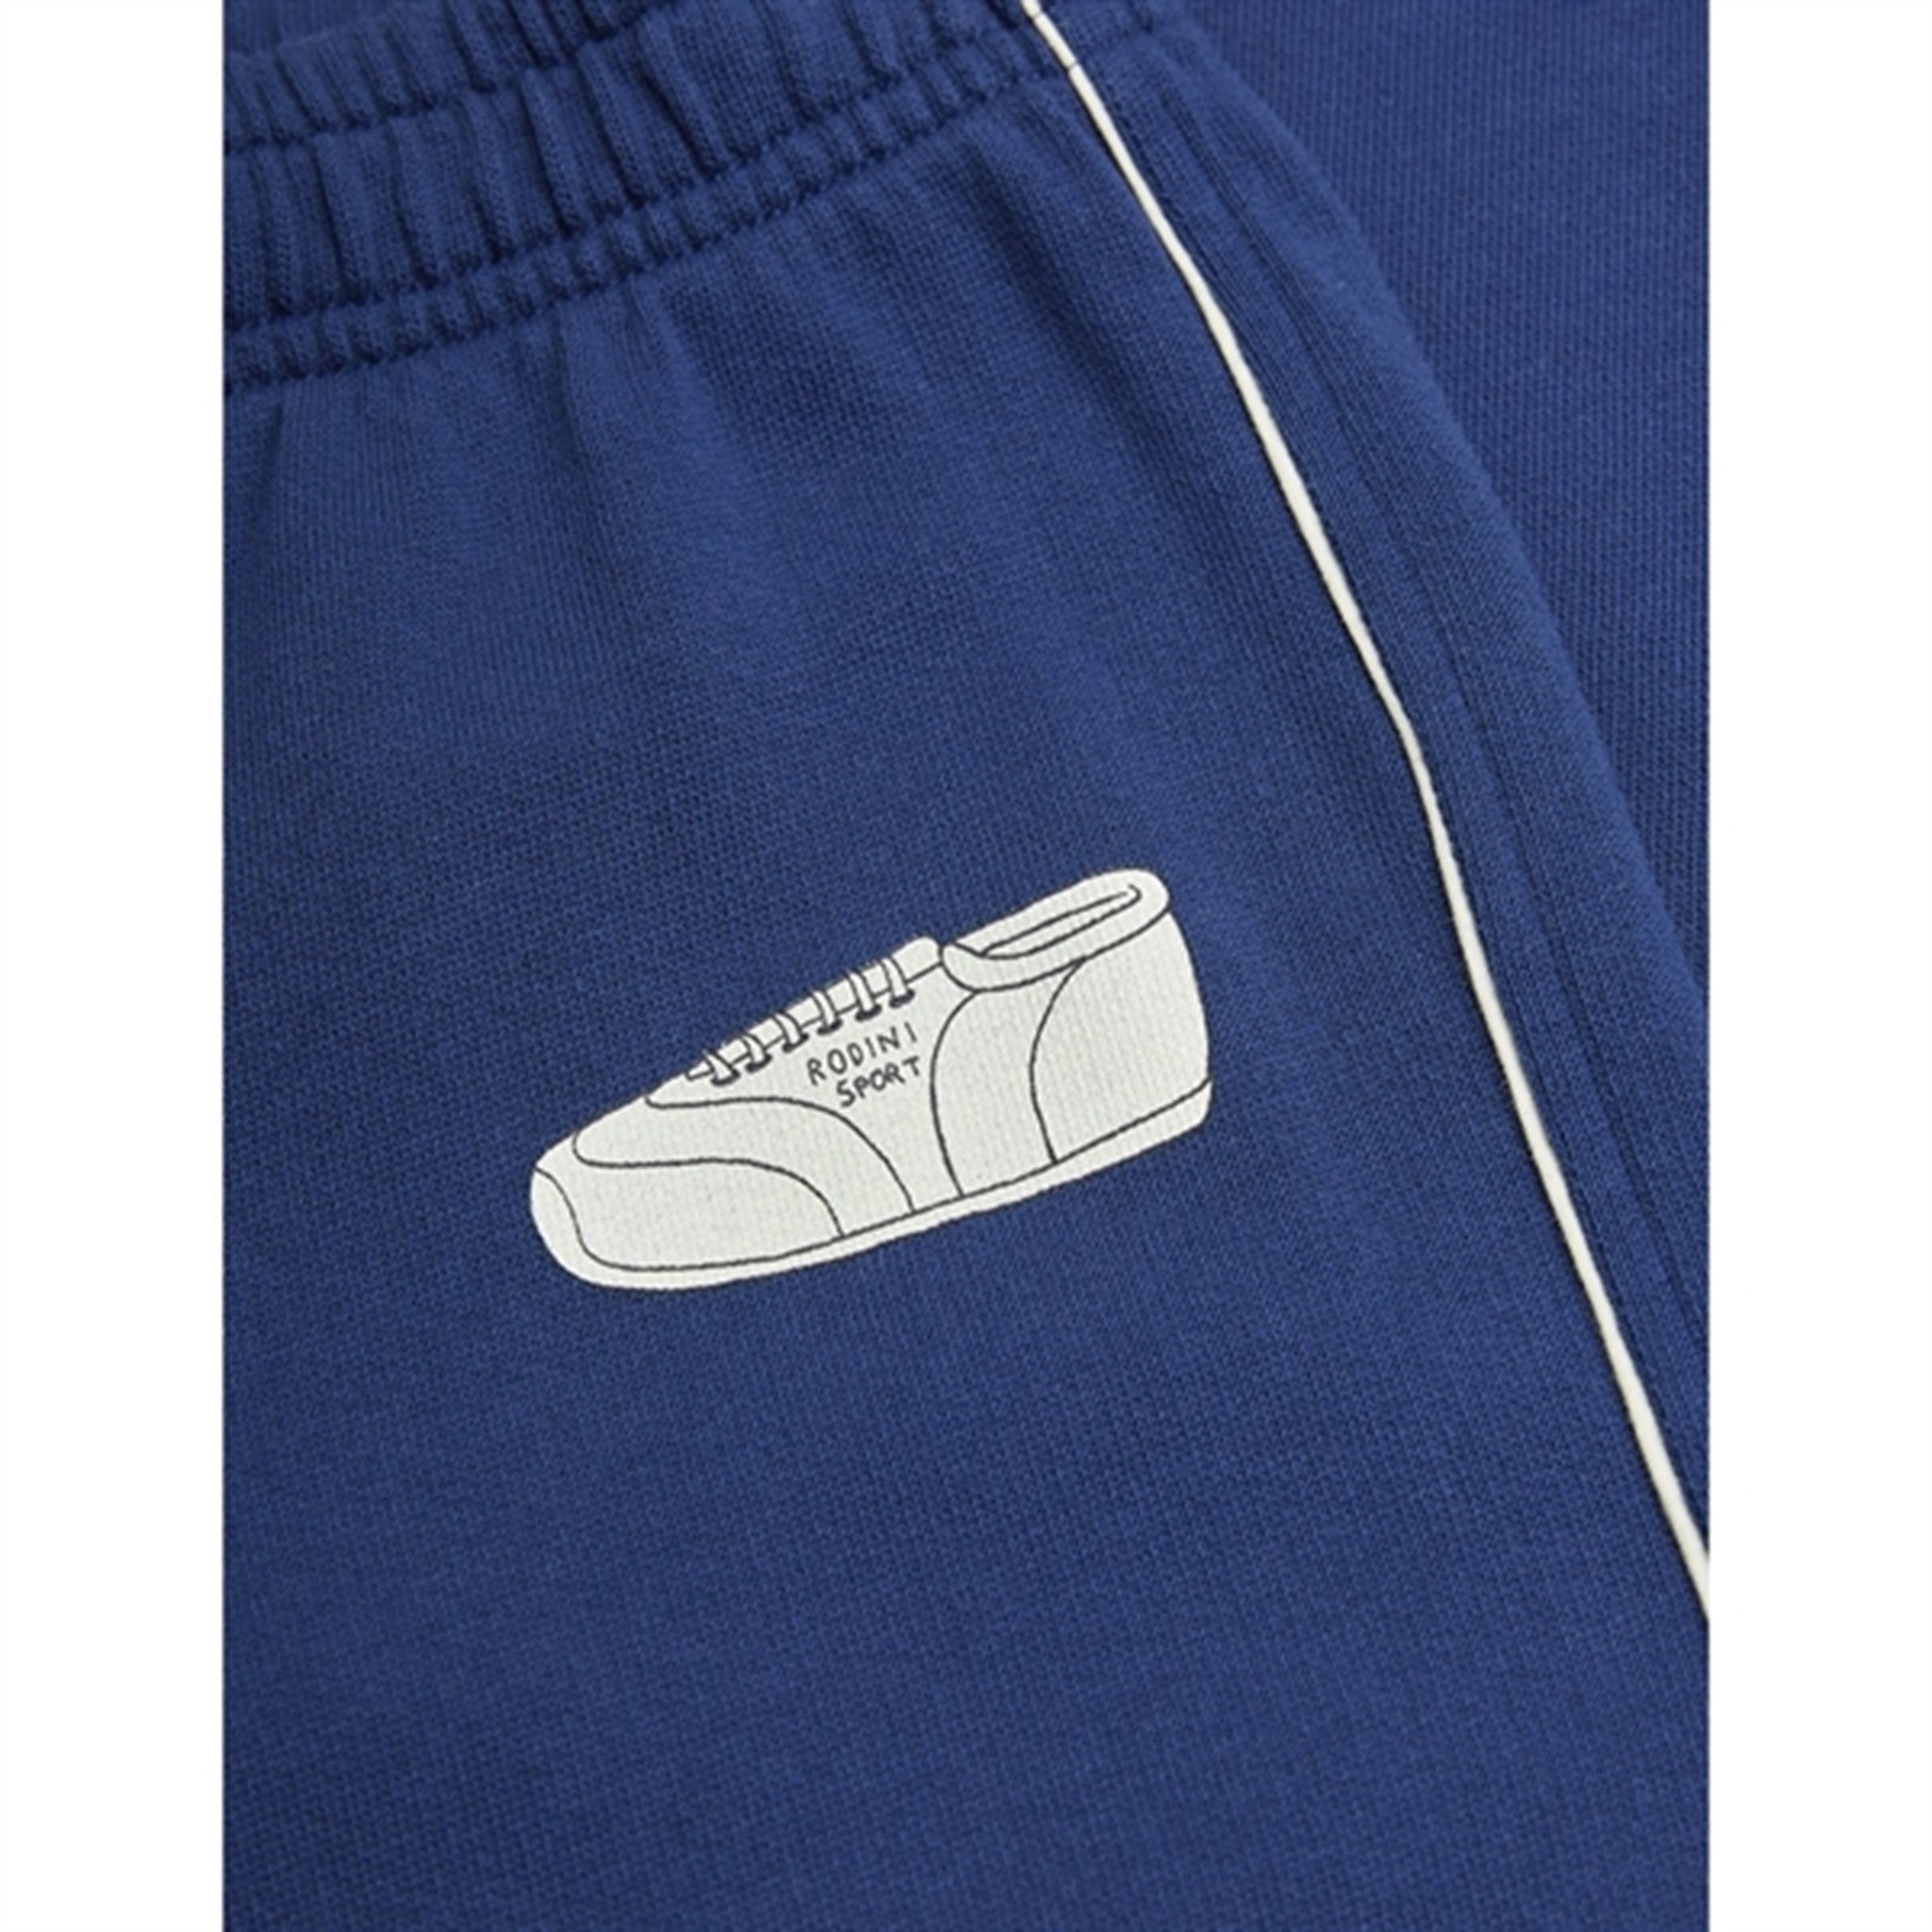 Mini Rodini Blue Jogging Sp Sweatpants 3